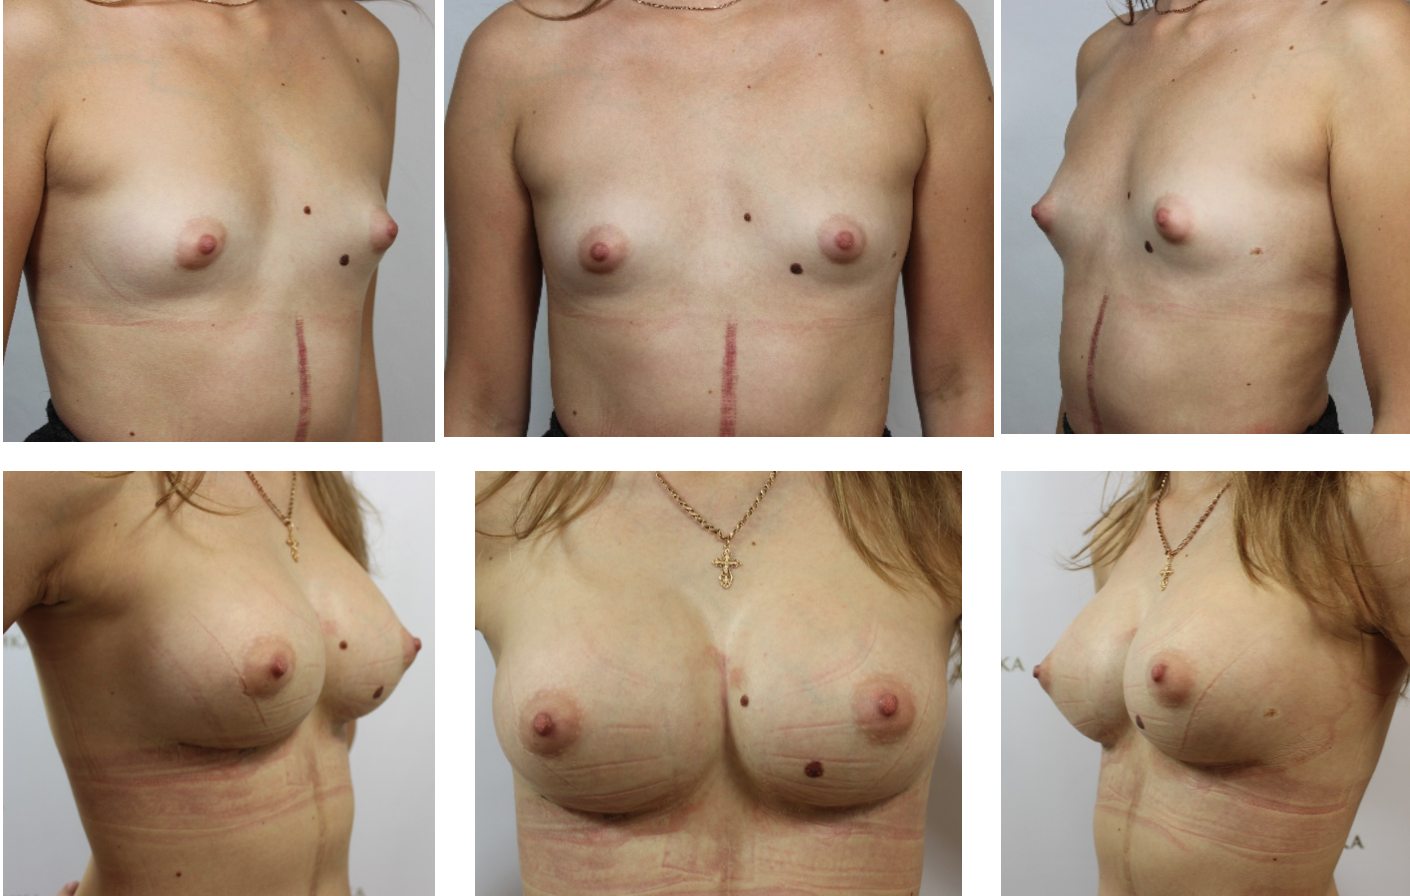 разновидности форм груди женщин фото 77